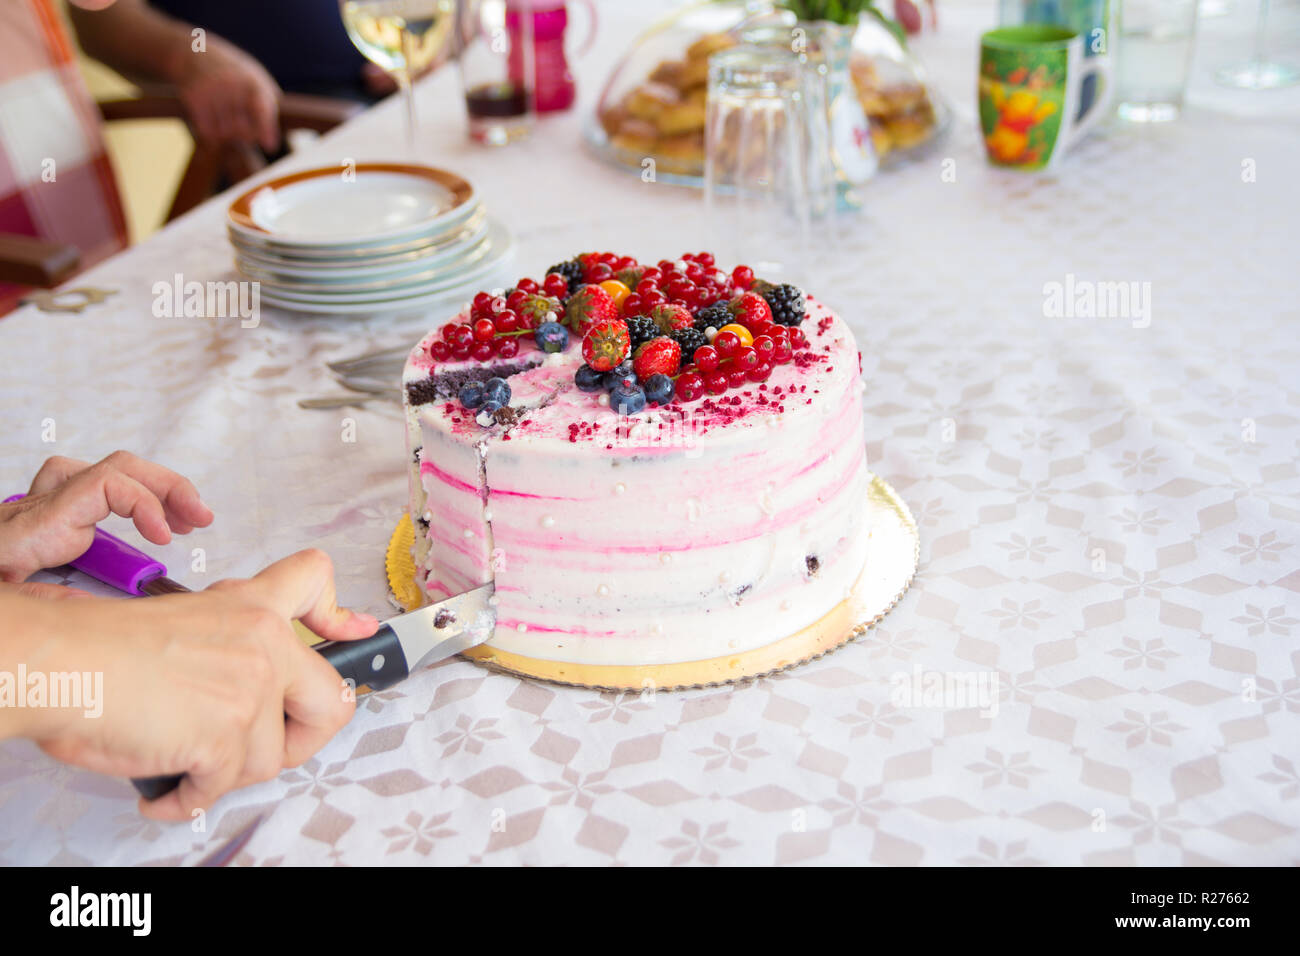 La main avec le couteau de trancher le gâteau d'anniversaire Banque D'Images